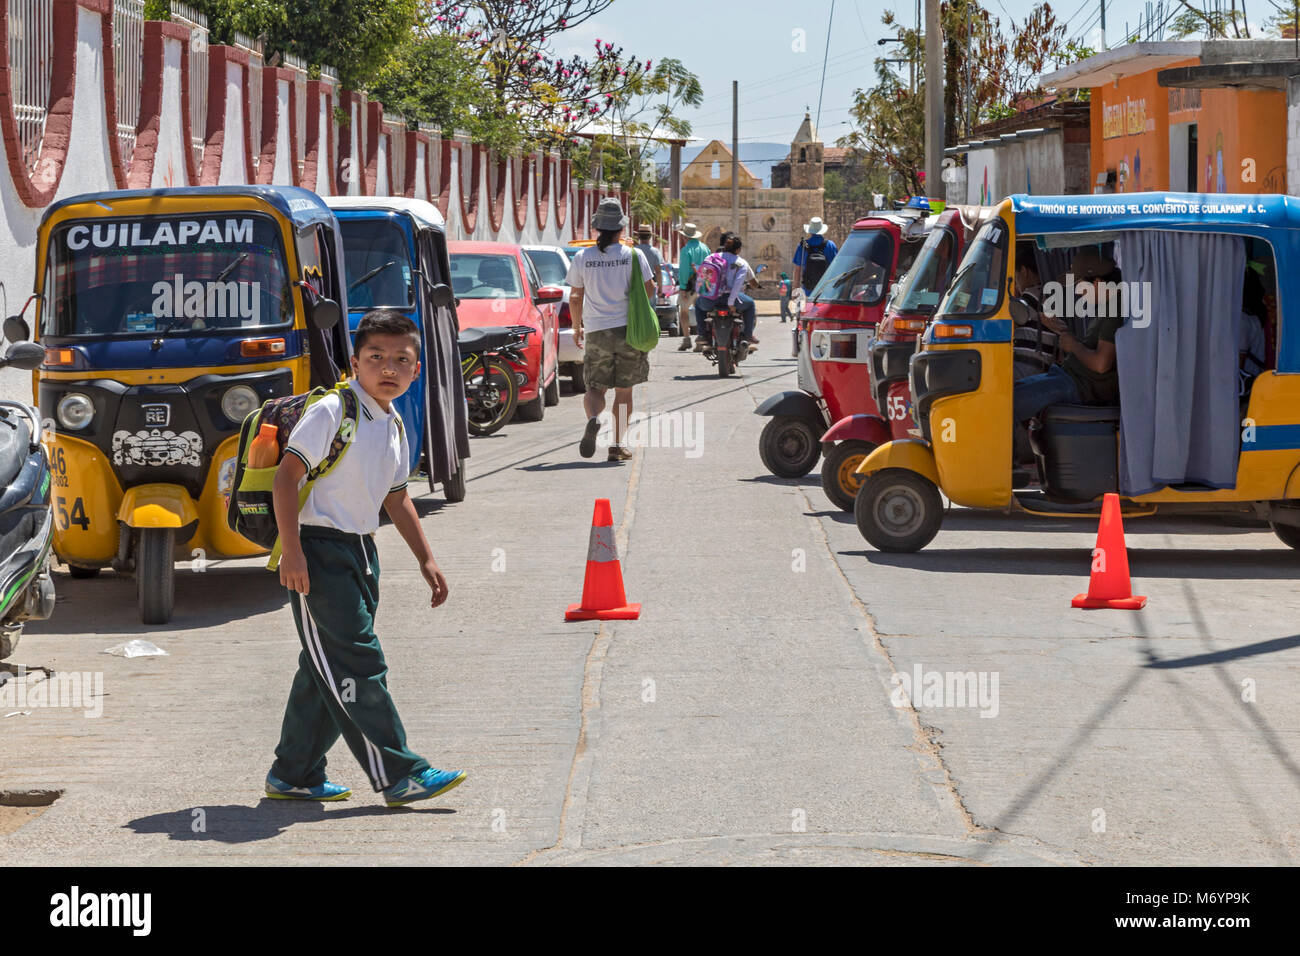 Cuilapam de Guerrero, Oaxaca, Mexique - Un garçon marche à la maison de l'école, cours des trois roues, des taxis de la ville. Les taxis sont très communes dans les villes d'Oaxaca ; Banque D'Images